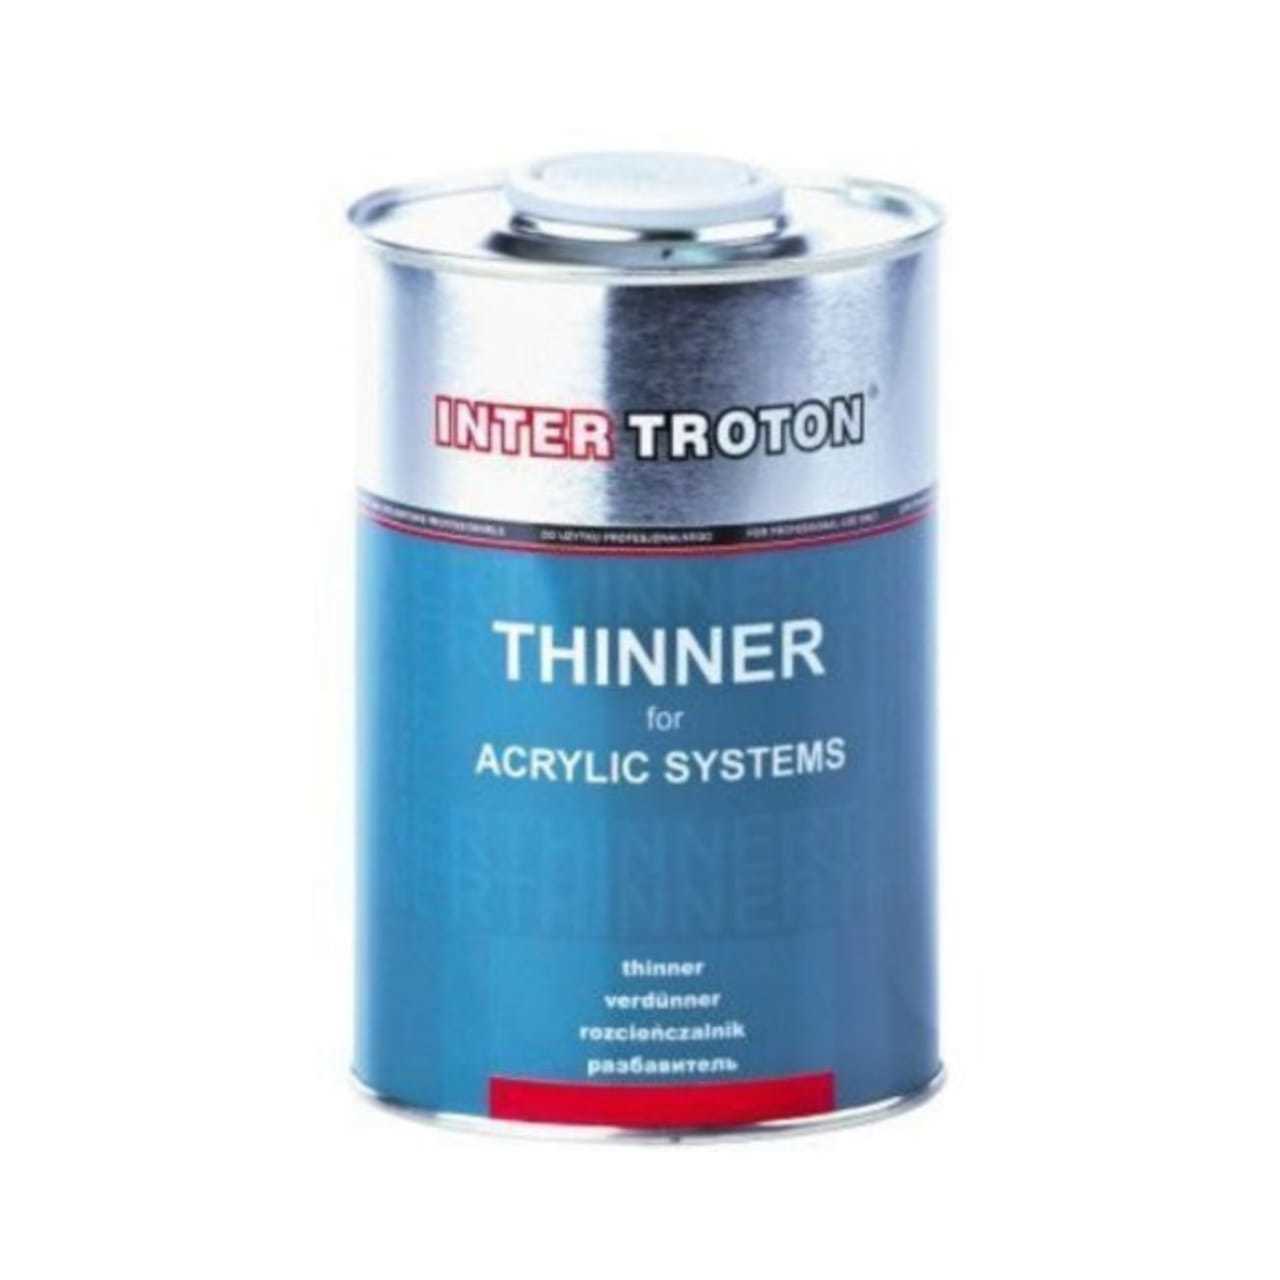 IT THINNER ACRYLIC Разбавитель для акриловых продуктов 1 л. (300002236)